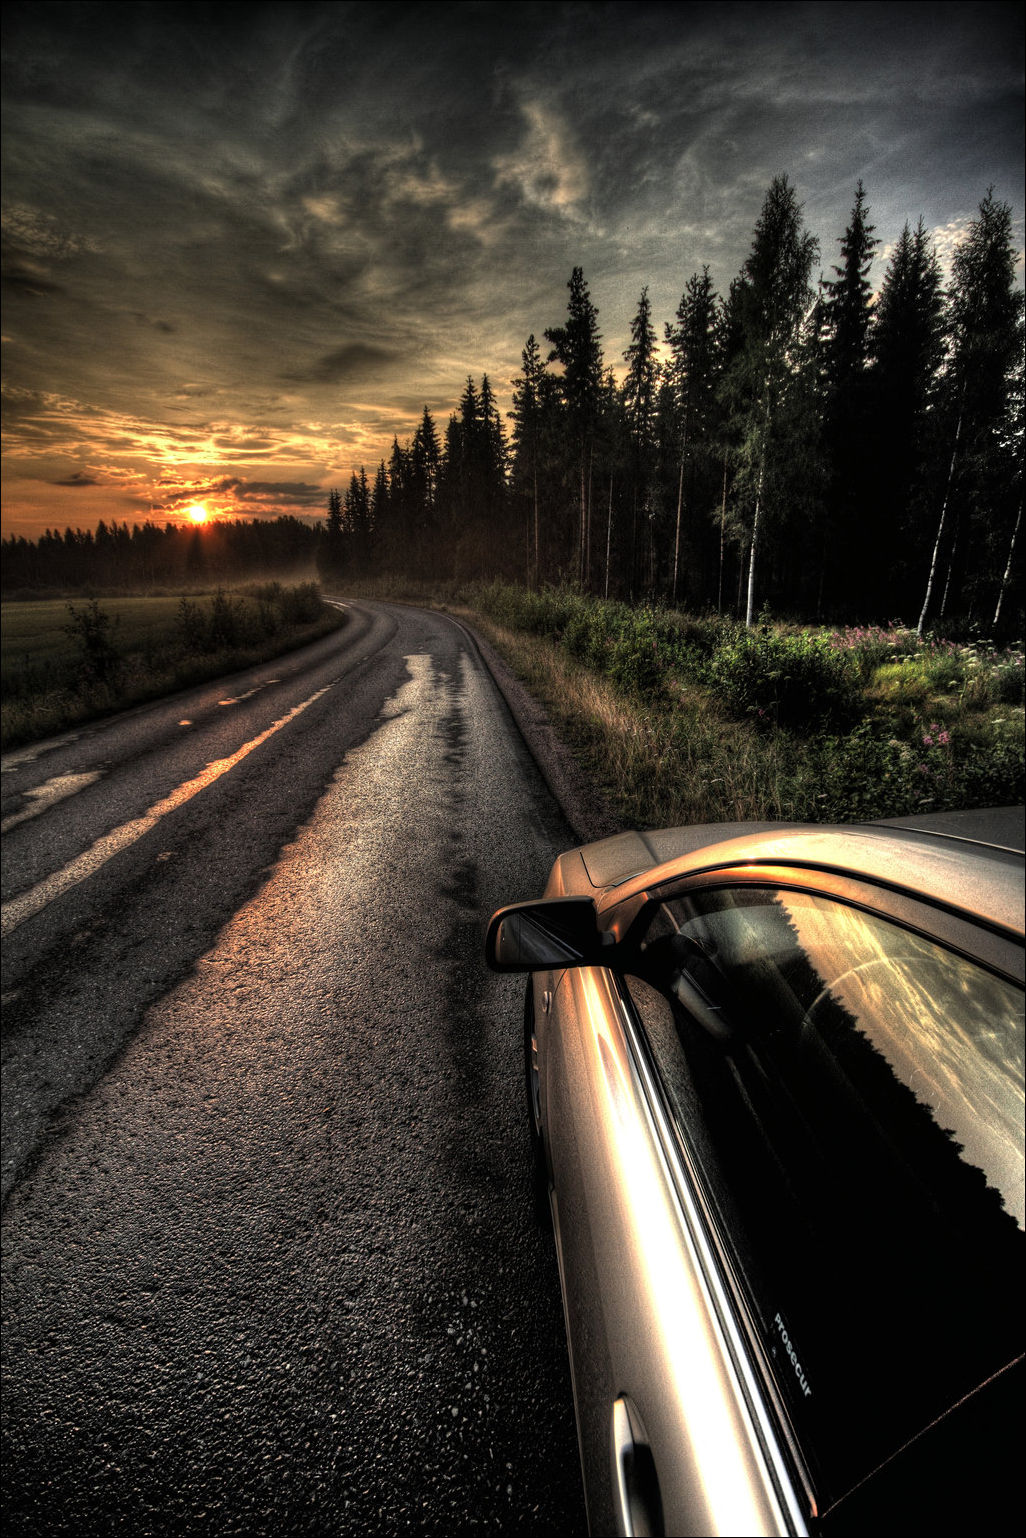 Дорога, закат, отражение в стекле машины Красота природы - ДляВас.ru